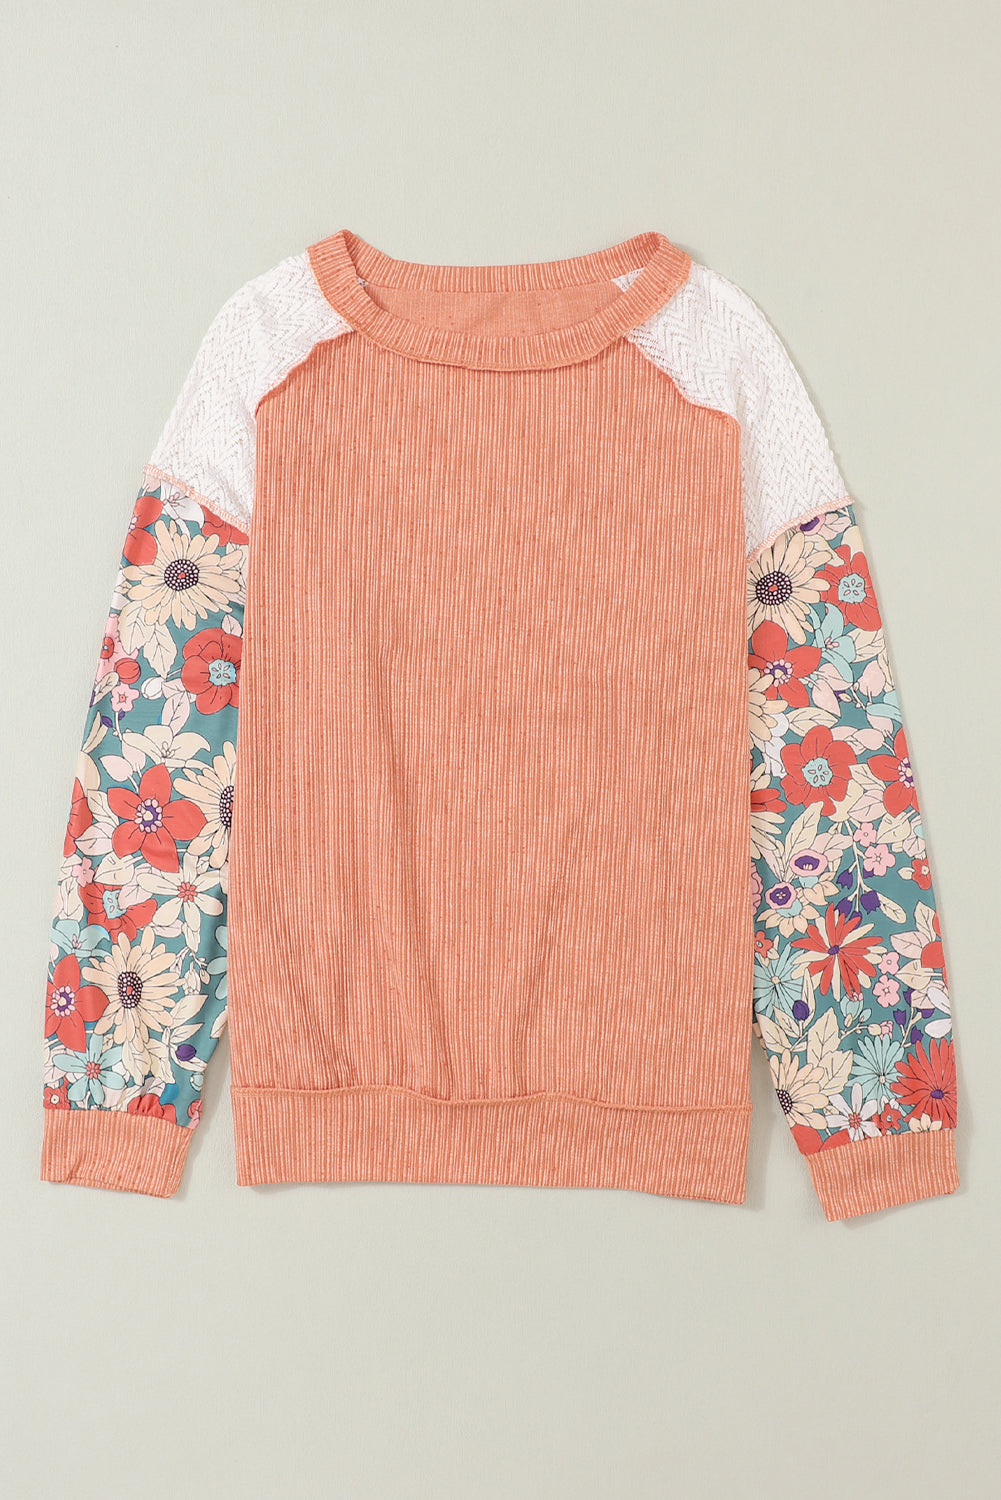 Rjava teksturirana bluza z napihnjenimi rokavi in ​​cvetličnimi motivi